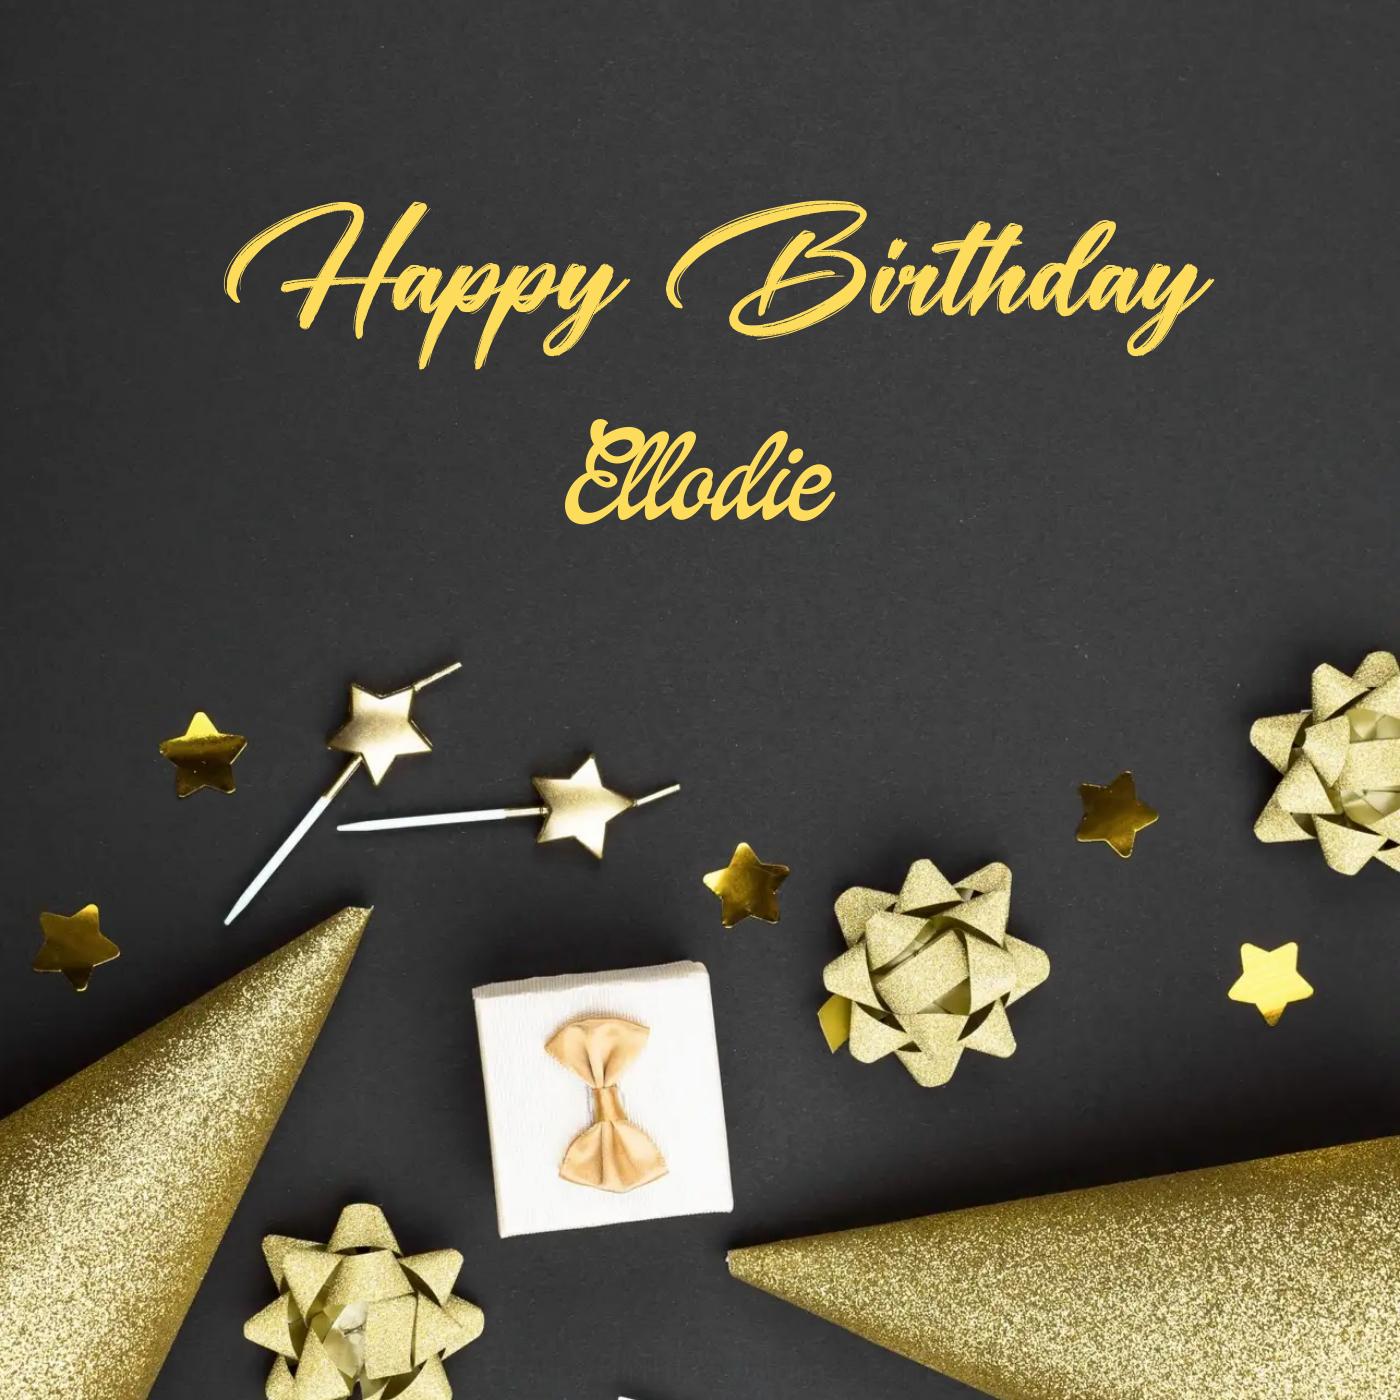 Happy Birthday Ellodie Golden Theme Card